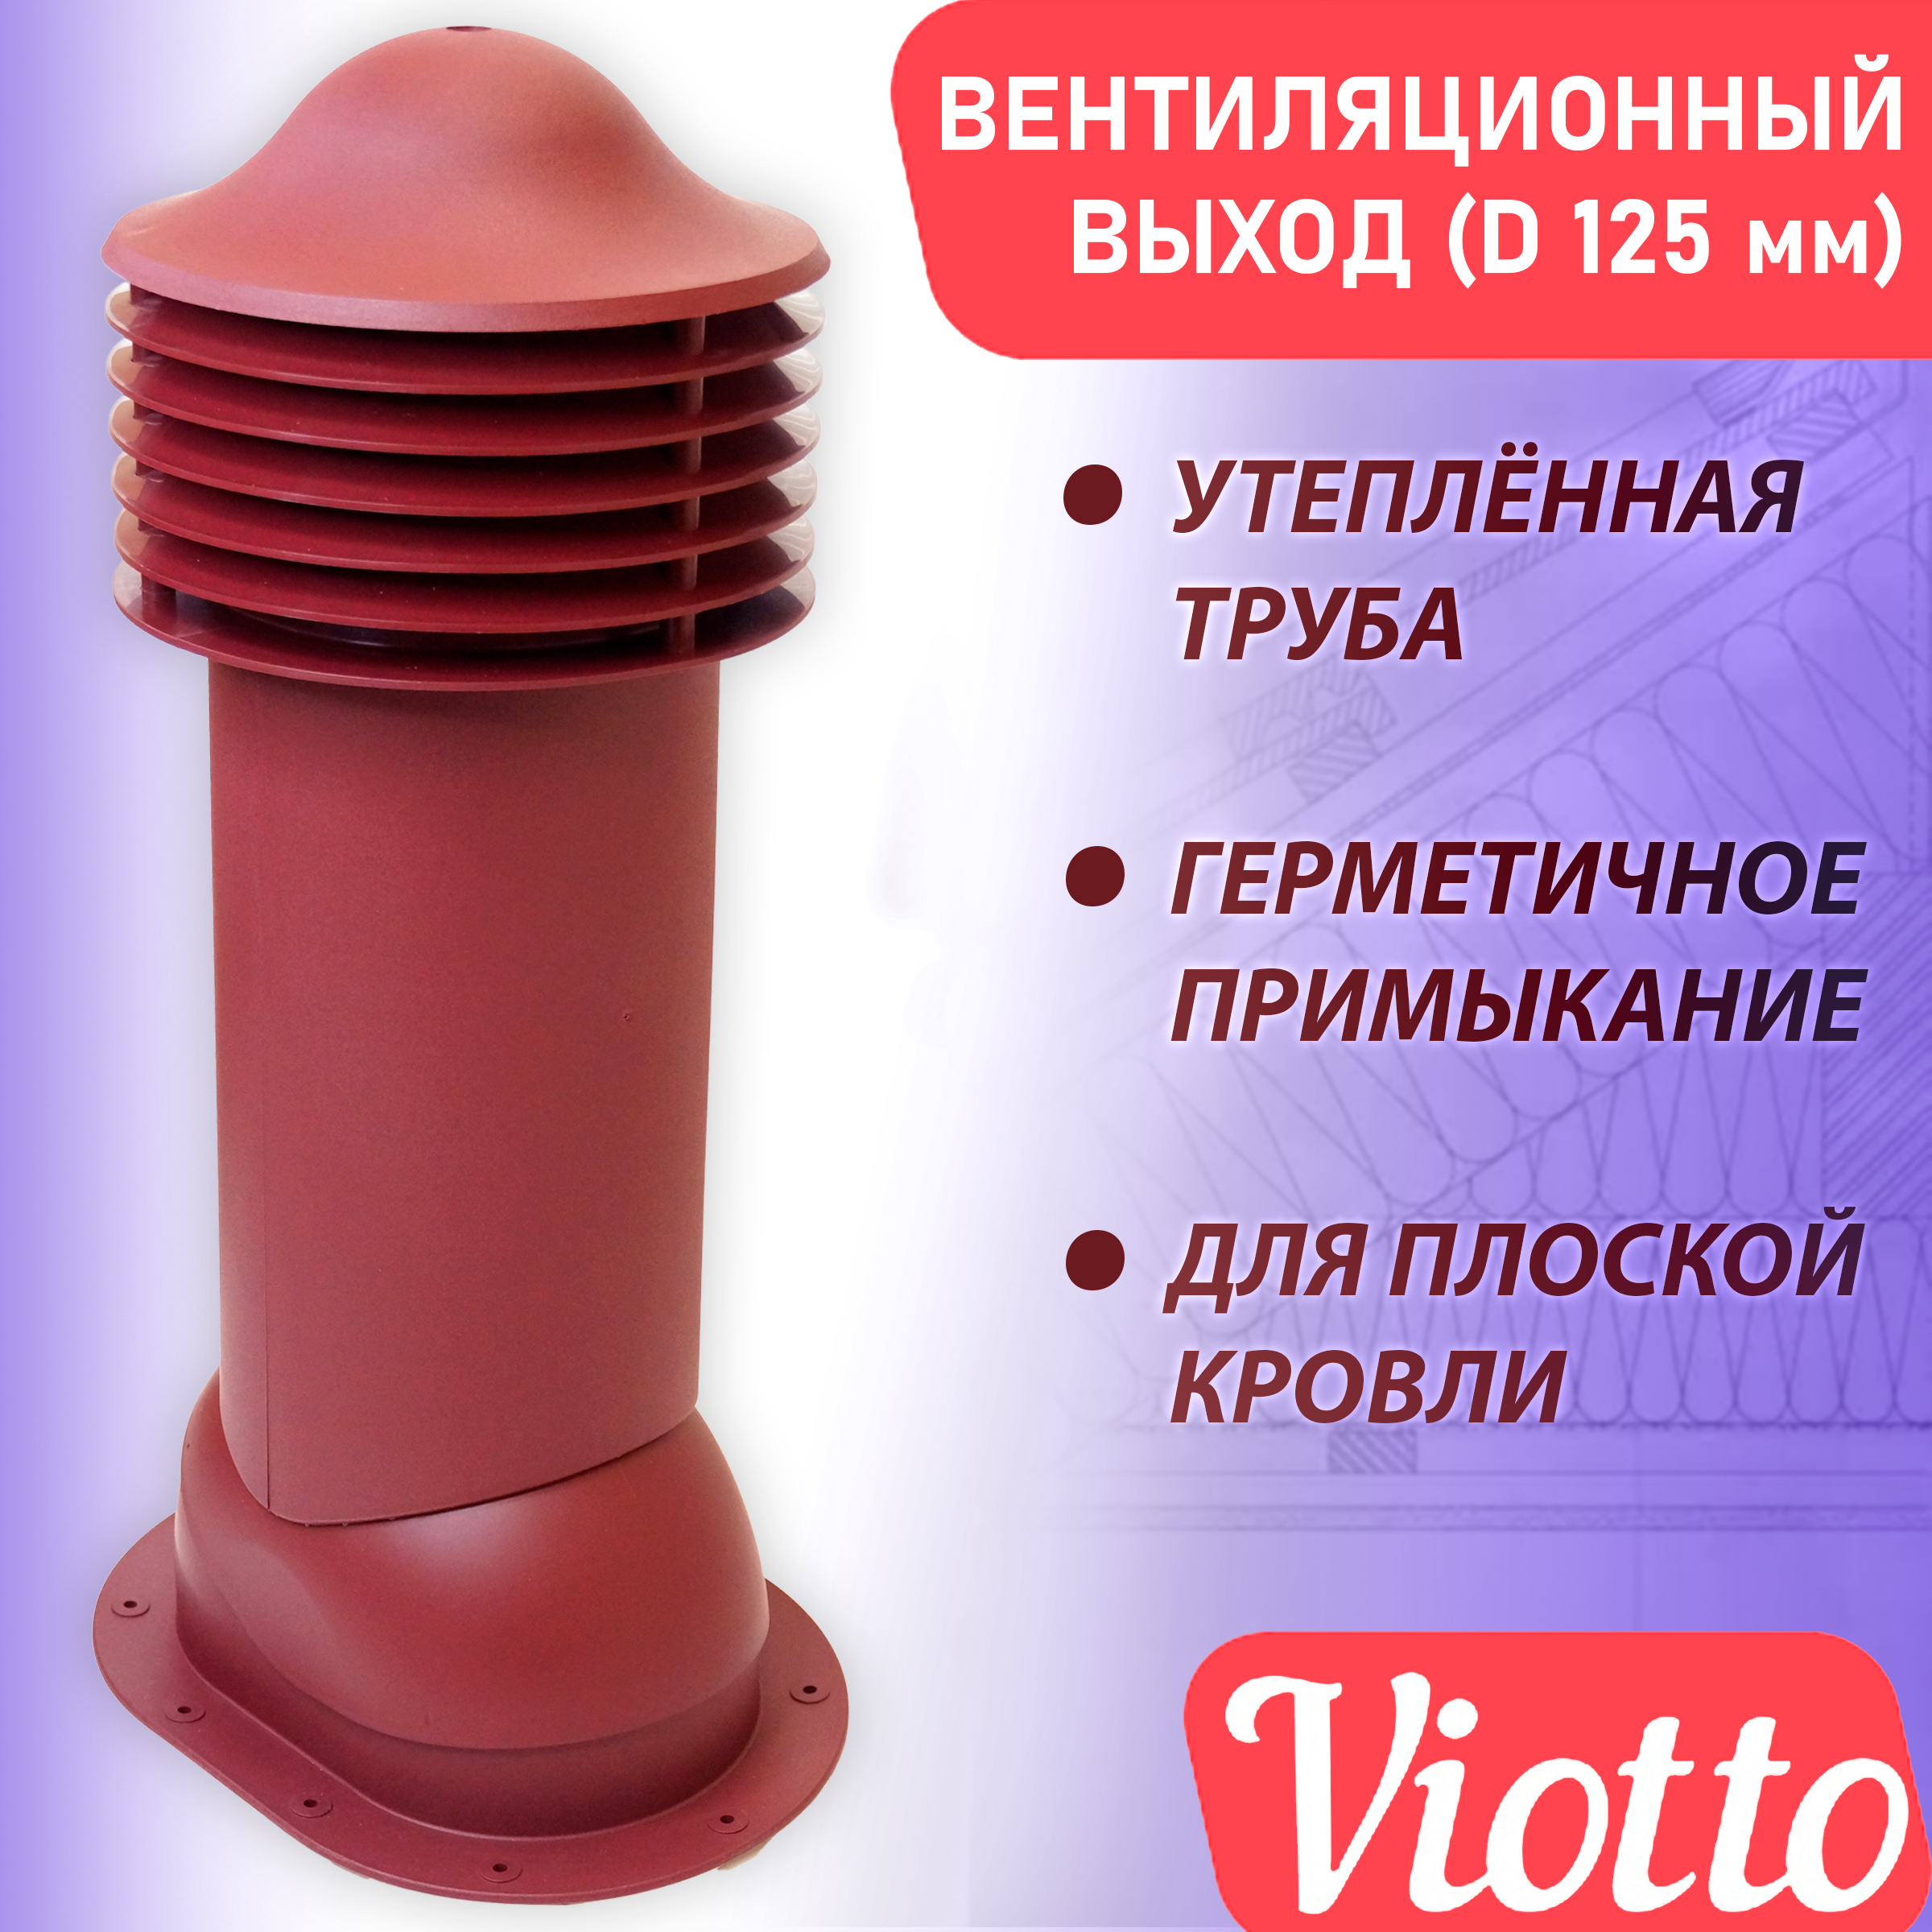 фото Труба вентиляционная утепленная viotto (125 мм) ral 3005 для плоской кровли, фальца